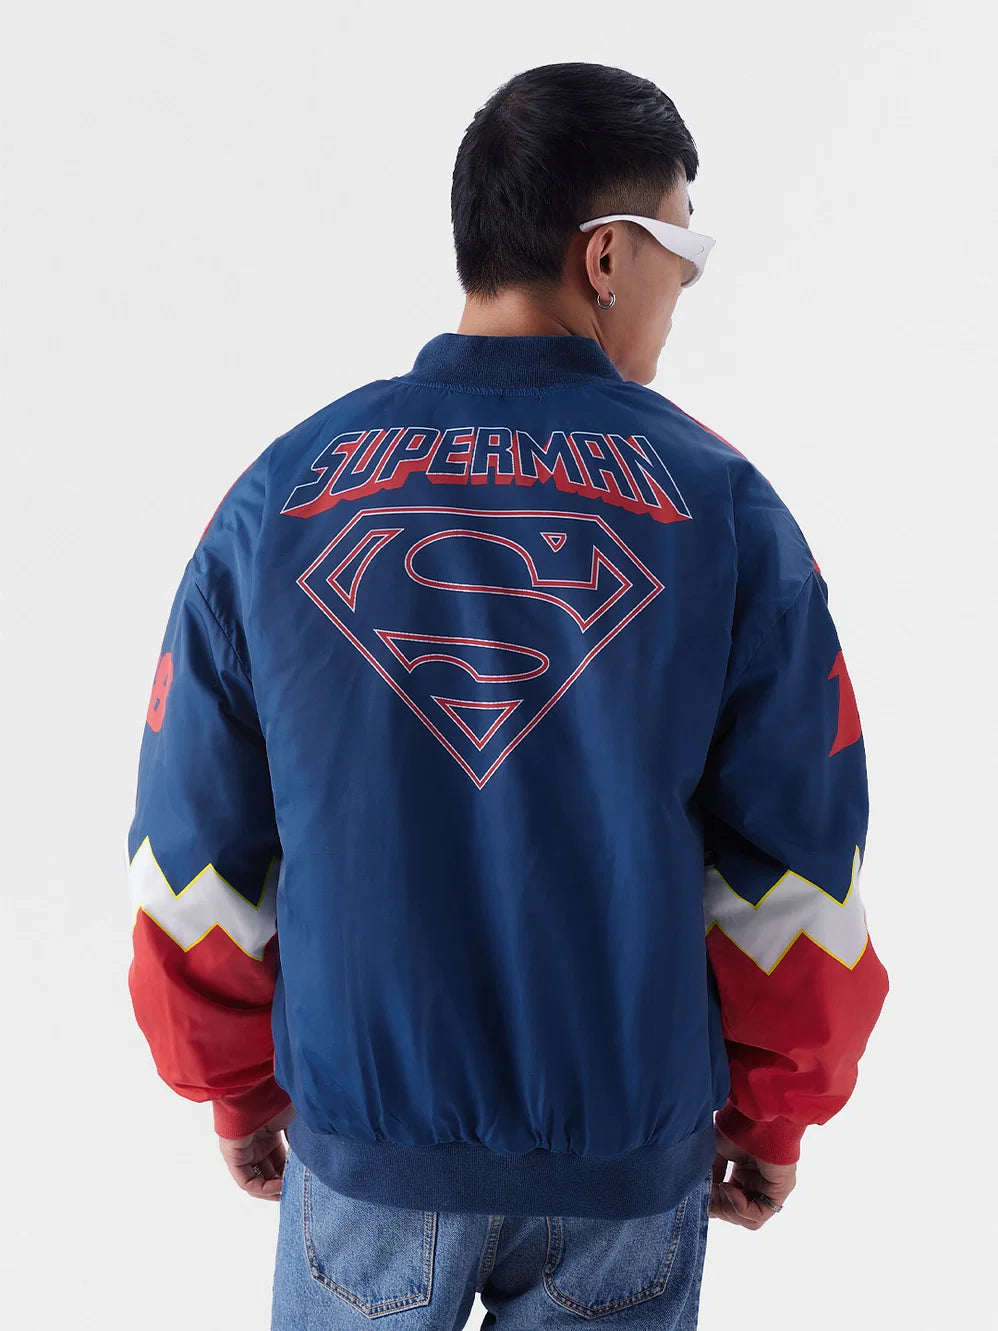 Superman: Kal-El (UK version) Recer Jacket